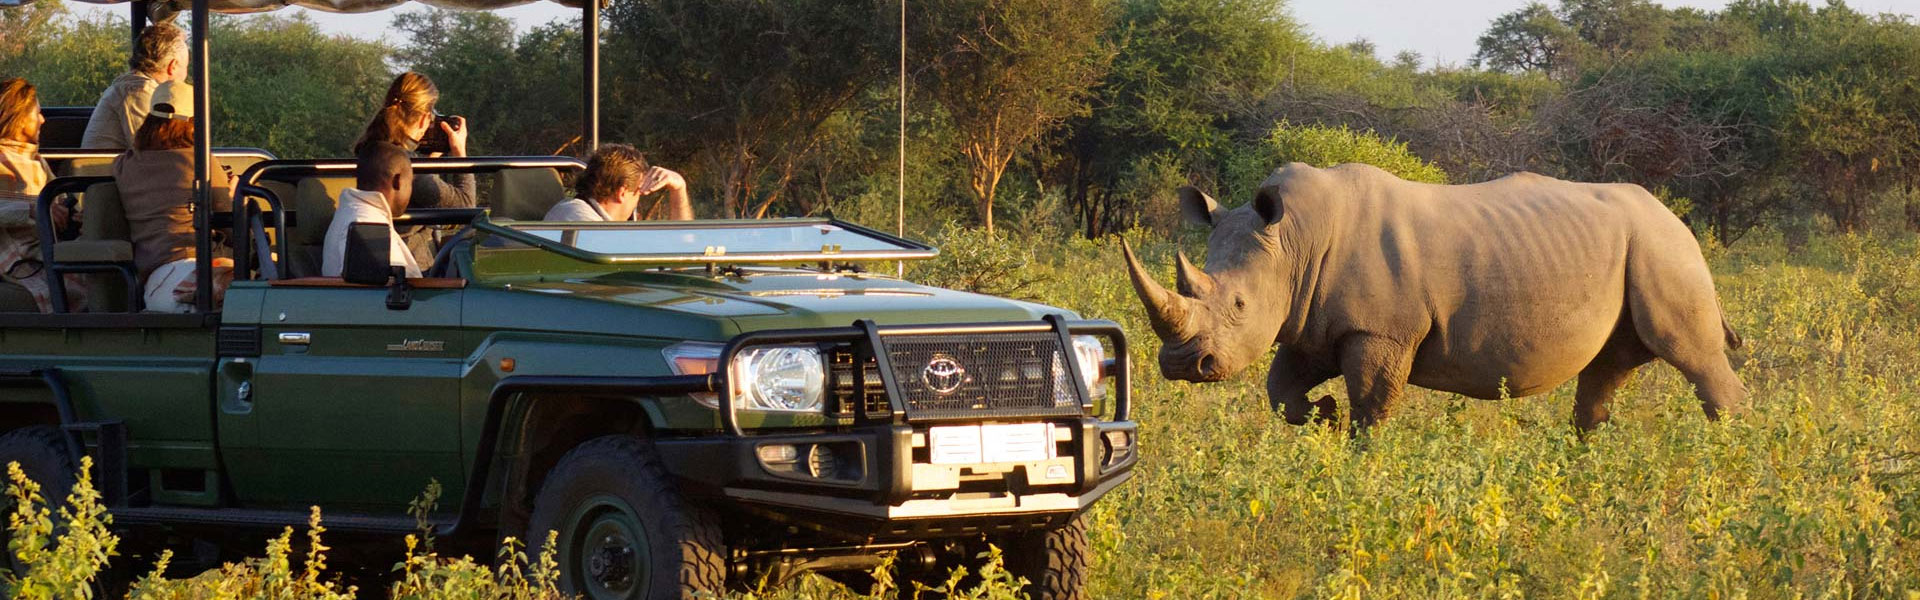 How to travel on a Budget Safari to Uganda